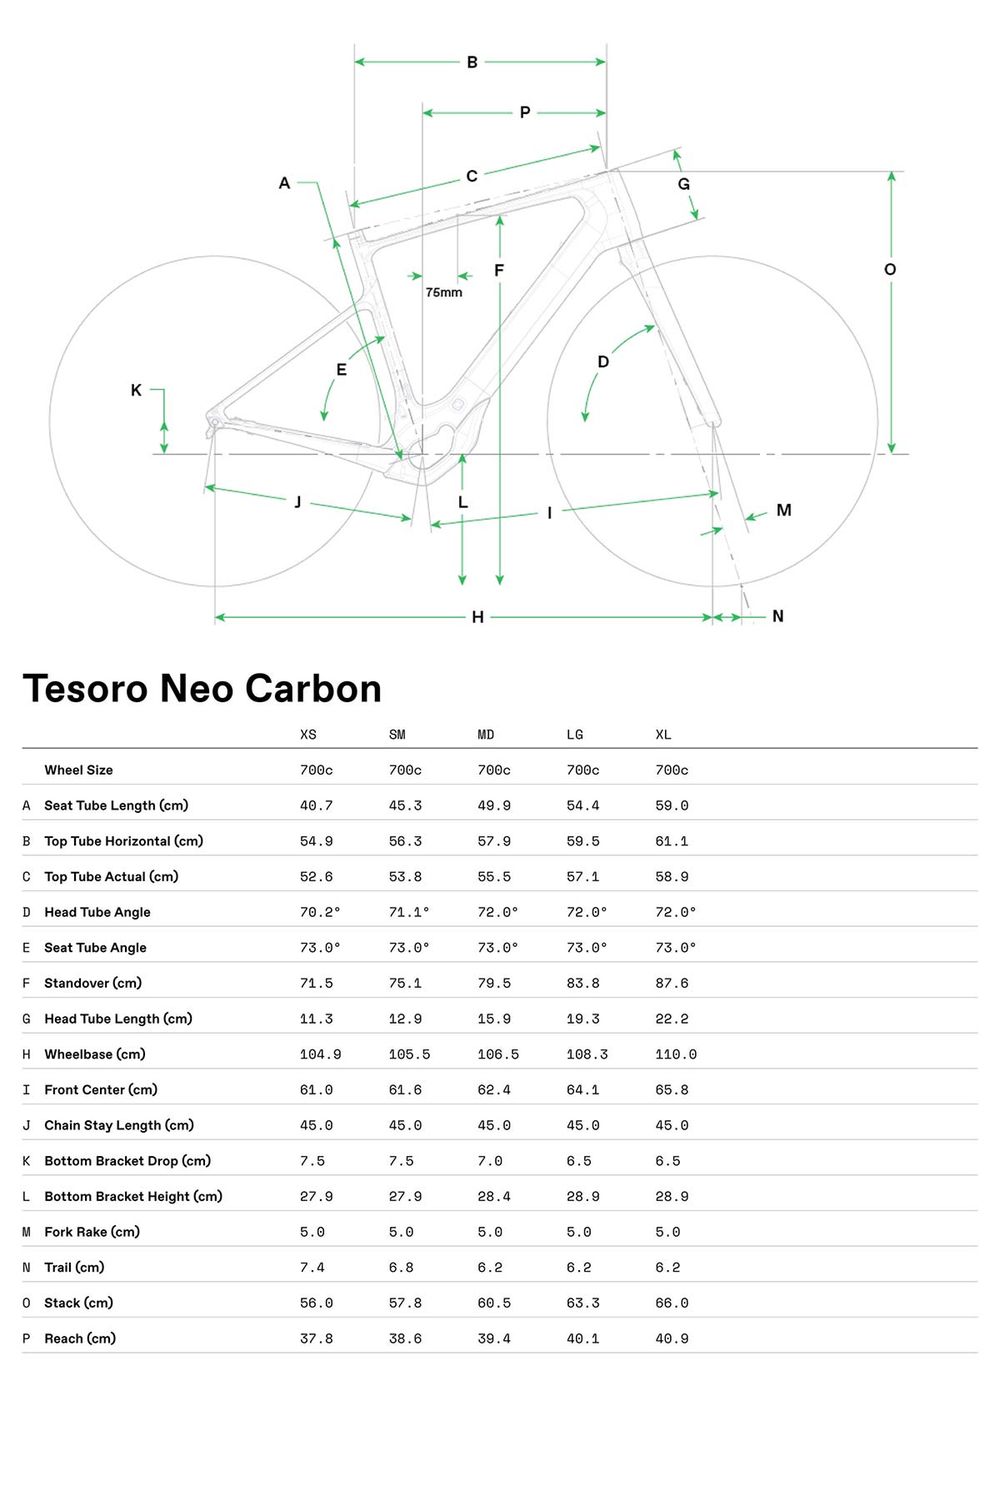 Tesoro Neo Carbon 1 - 